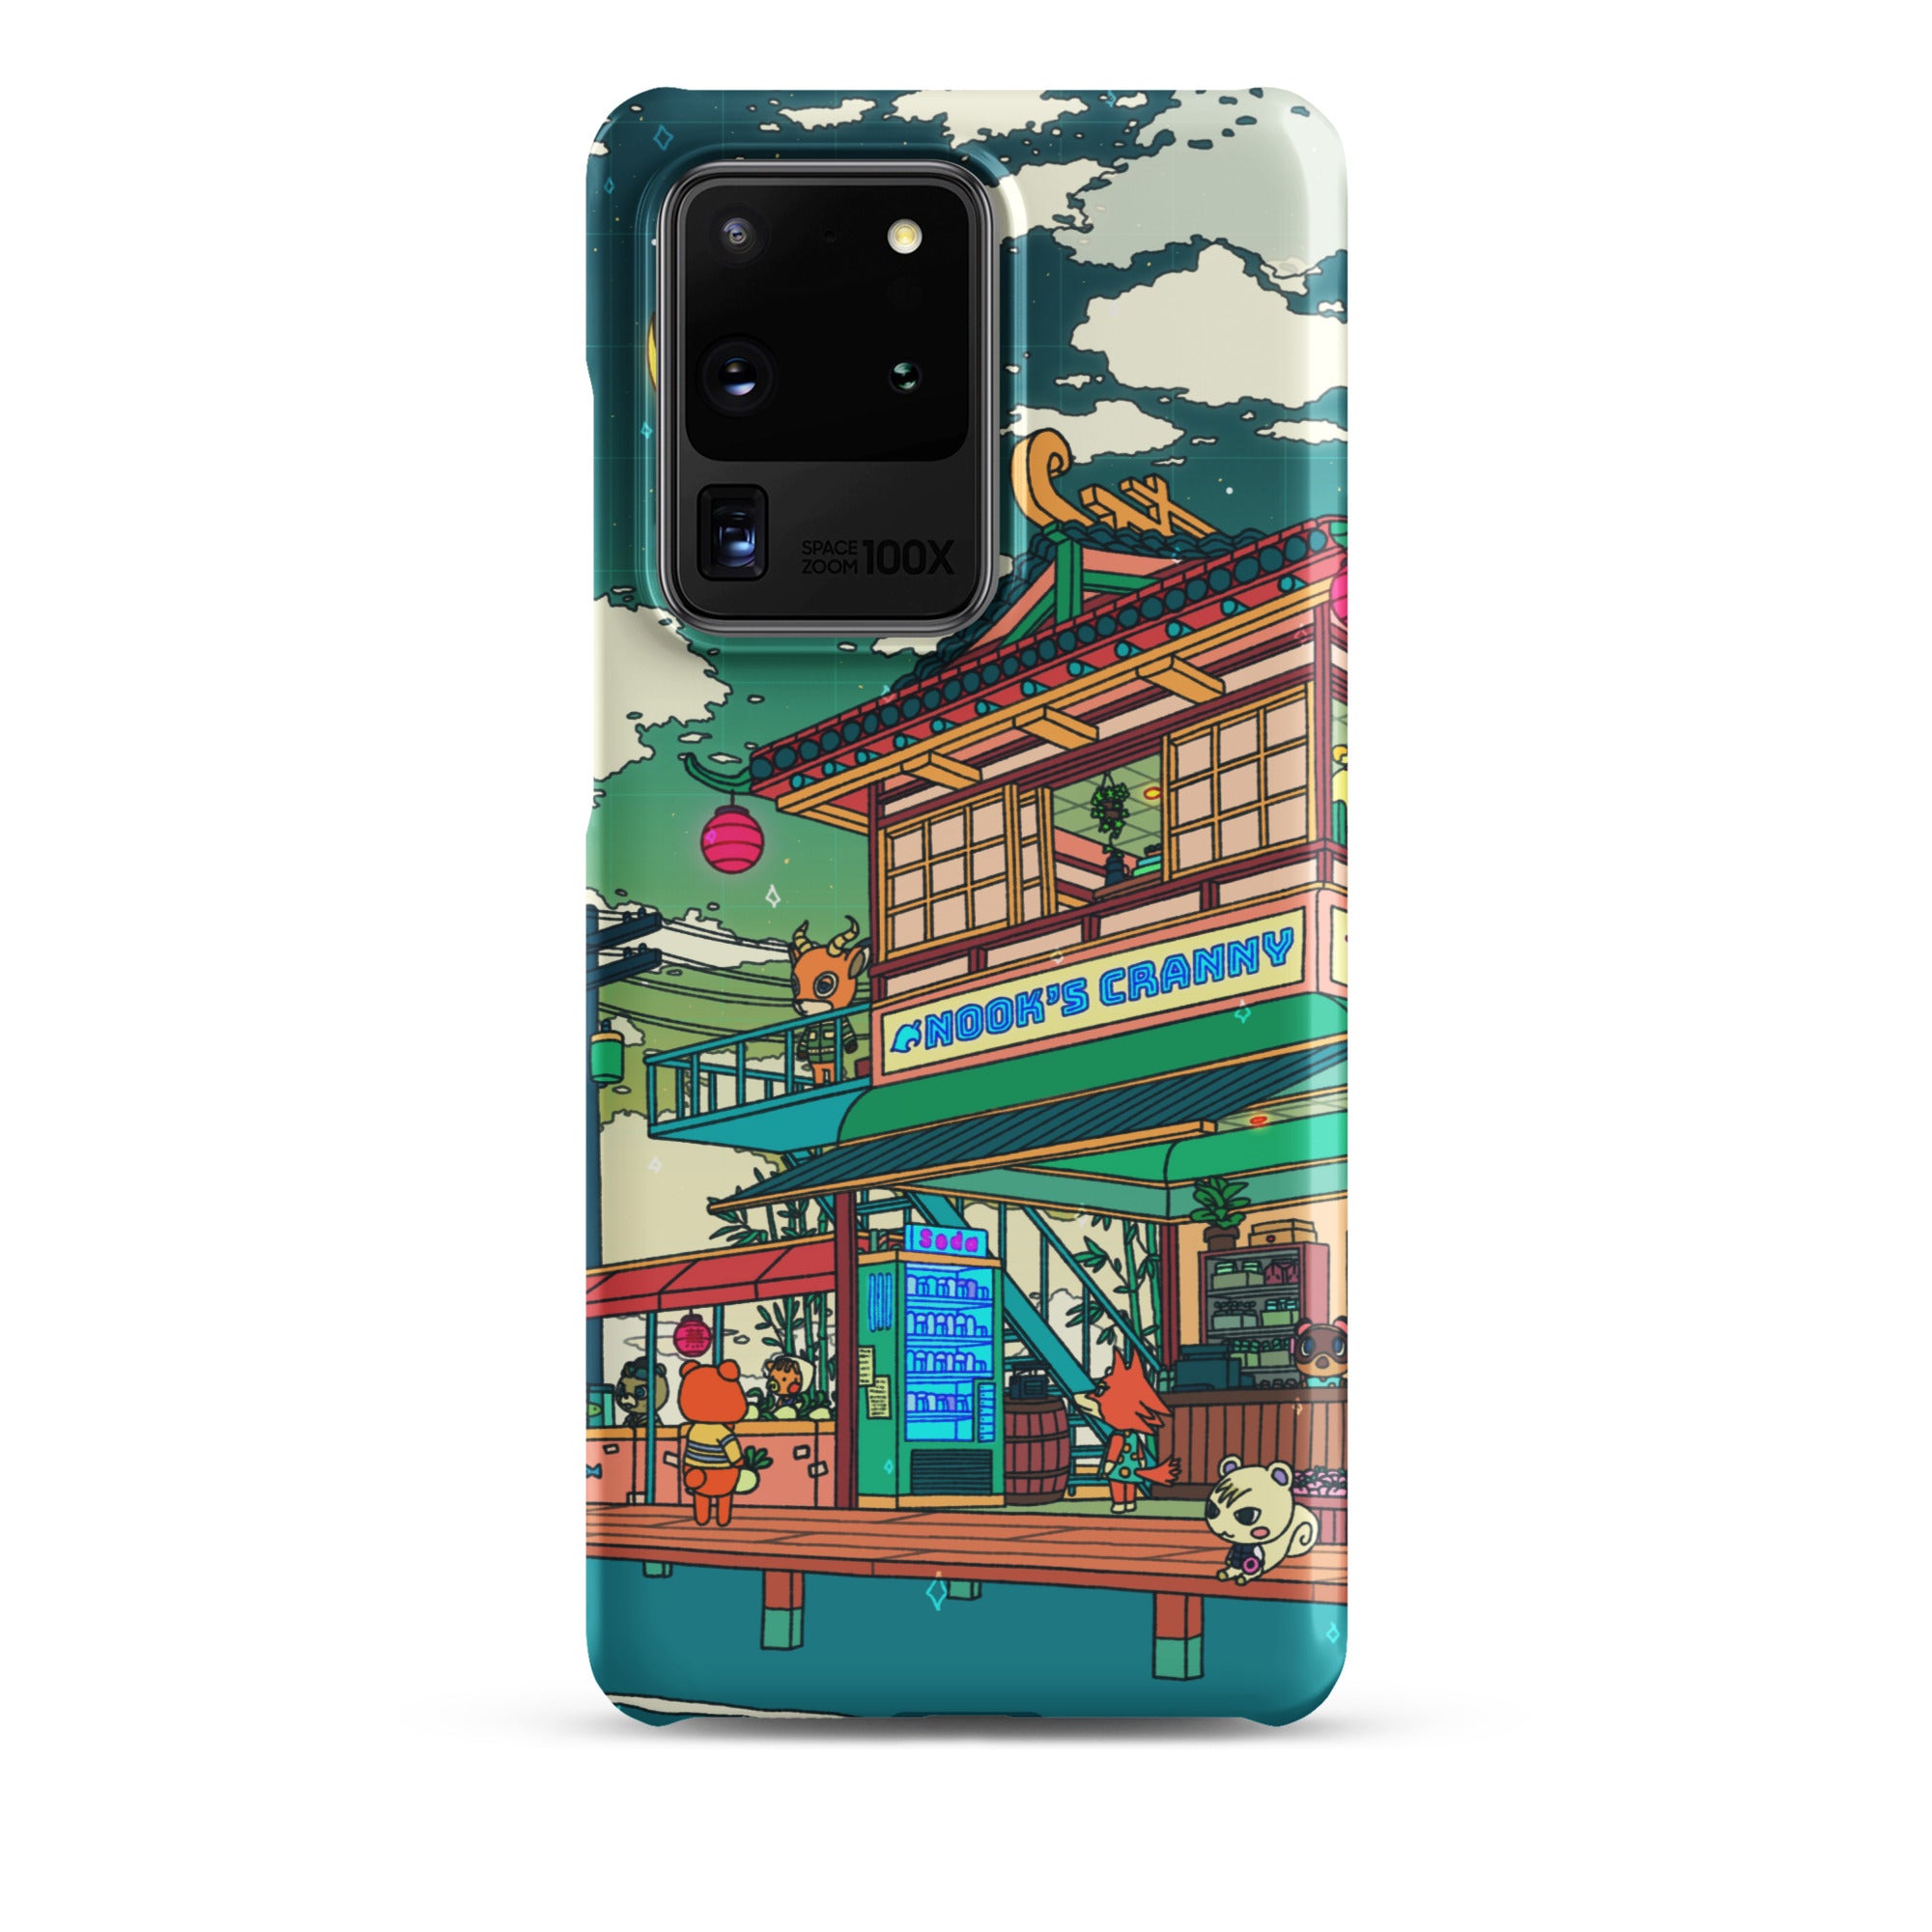 Nook's Corner Samsung Phone case